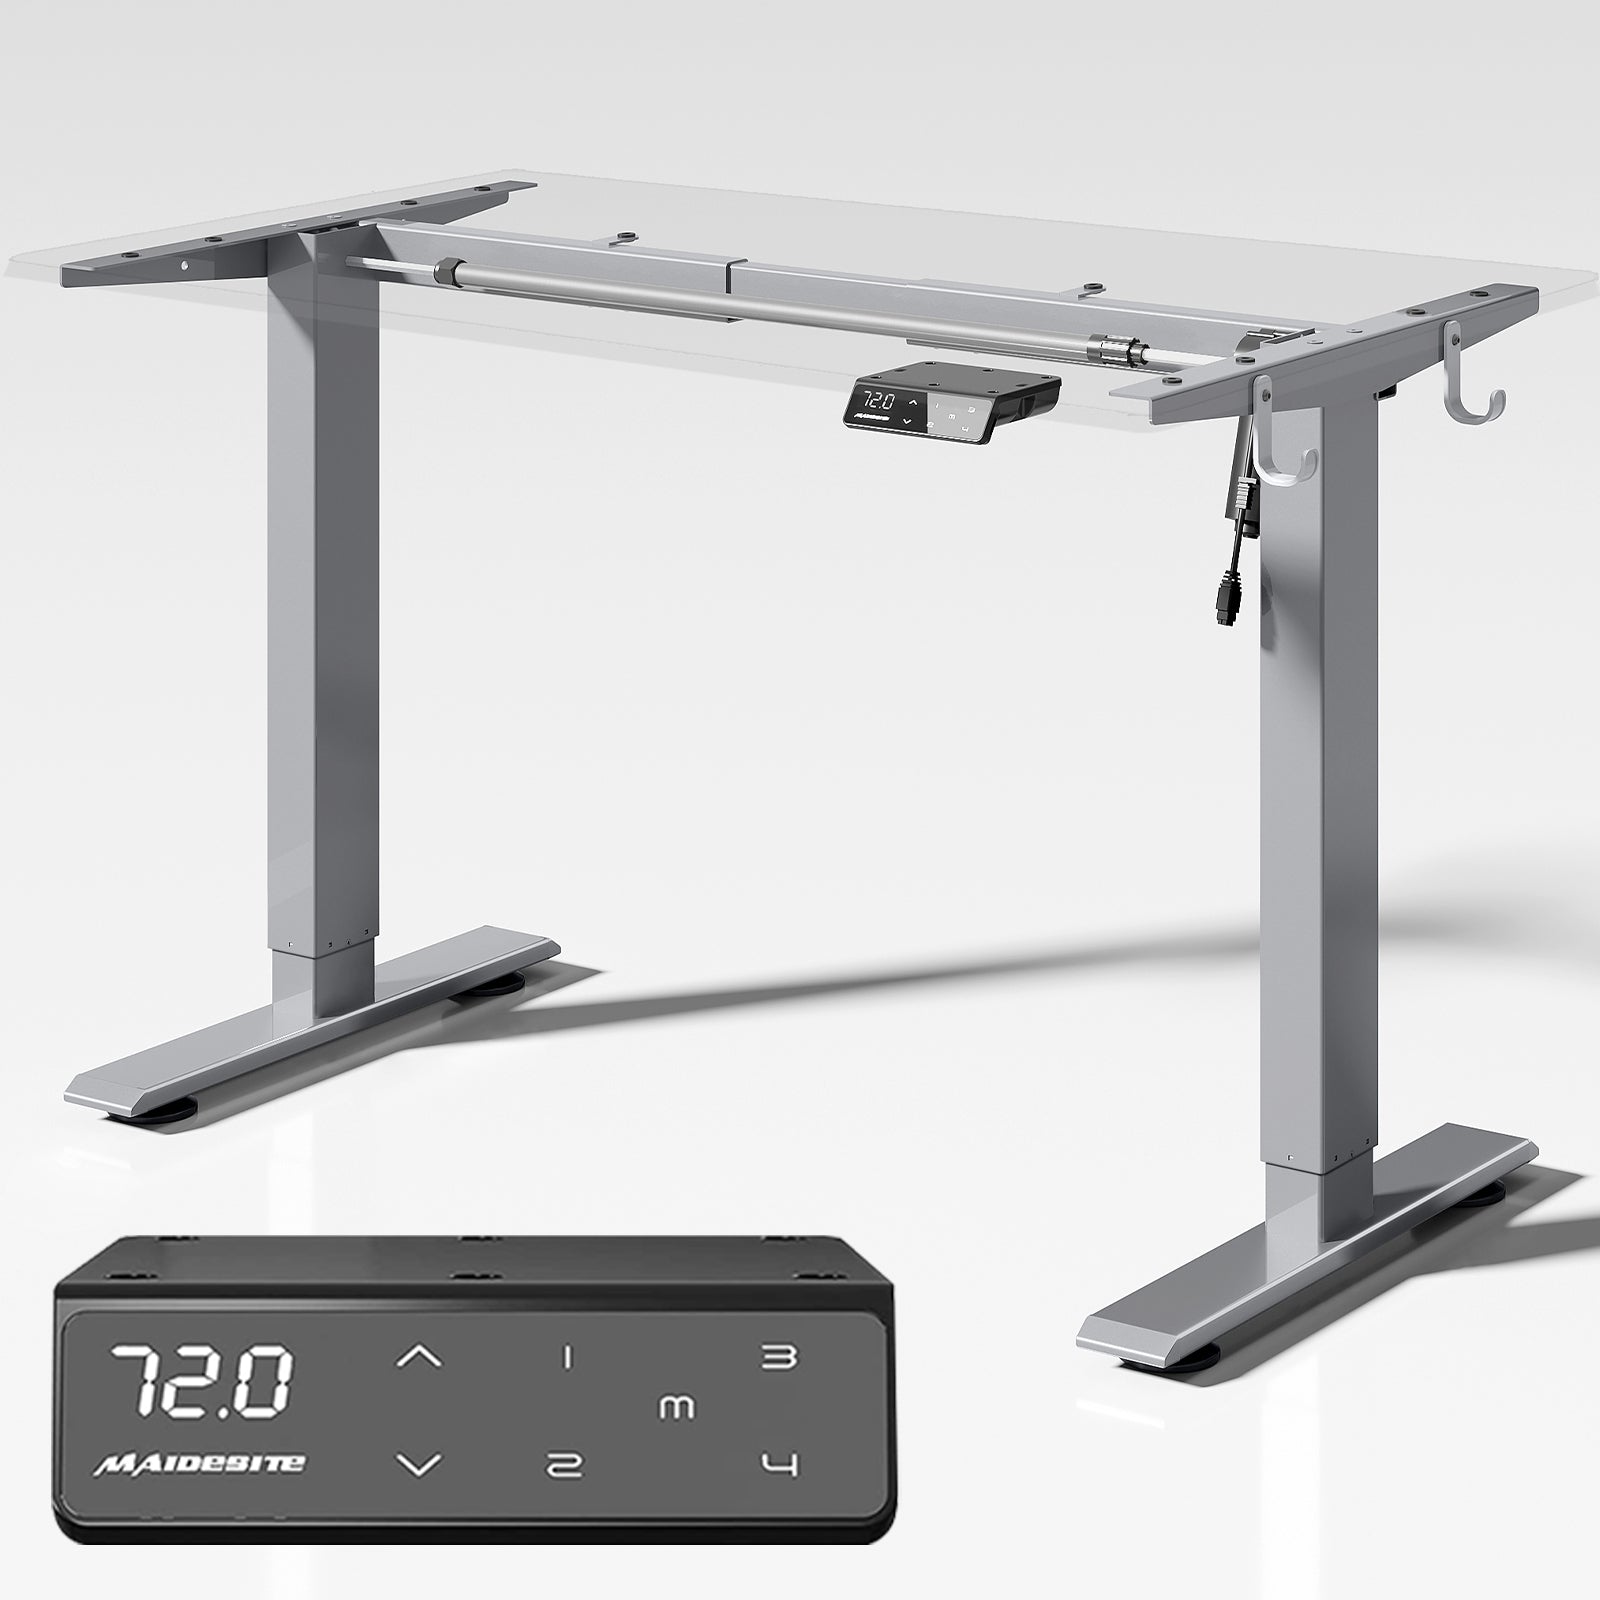 Maidesite T1 Basic - Marco de escritorio ajustable en altura viene con un panel de control táctil con 4 alturas de memoria